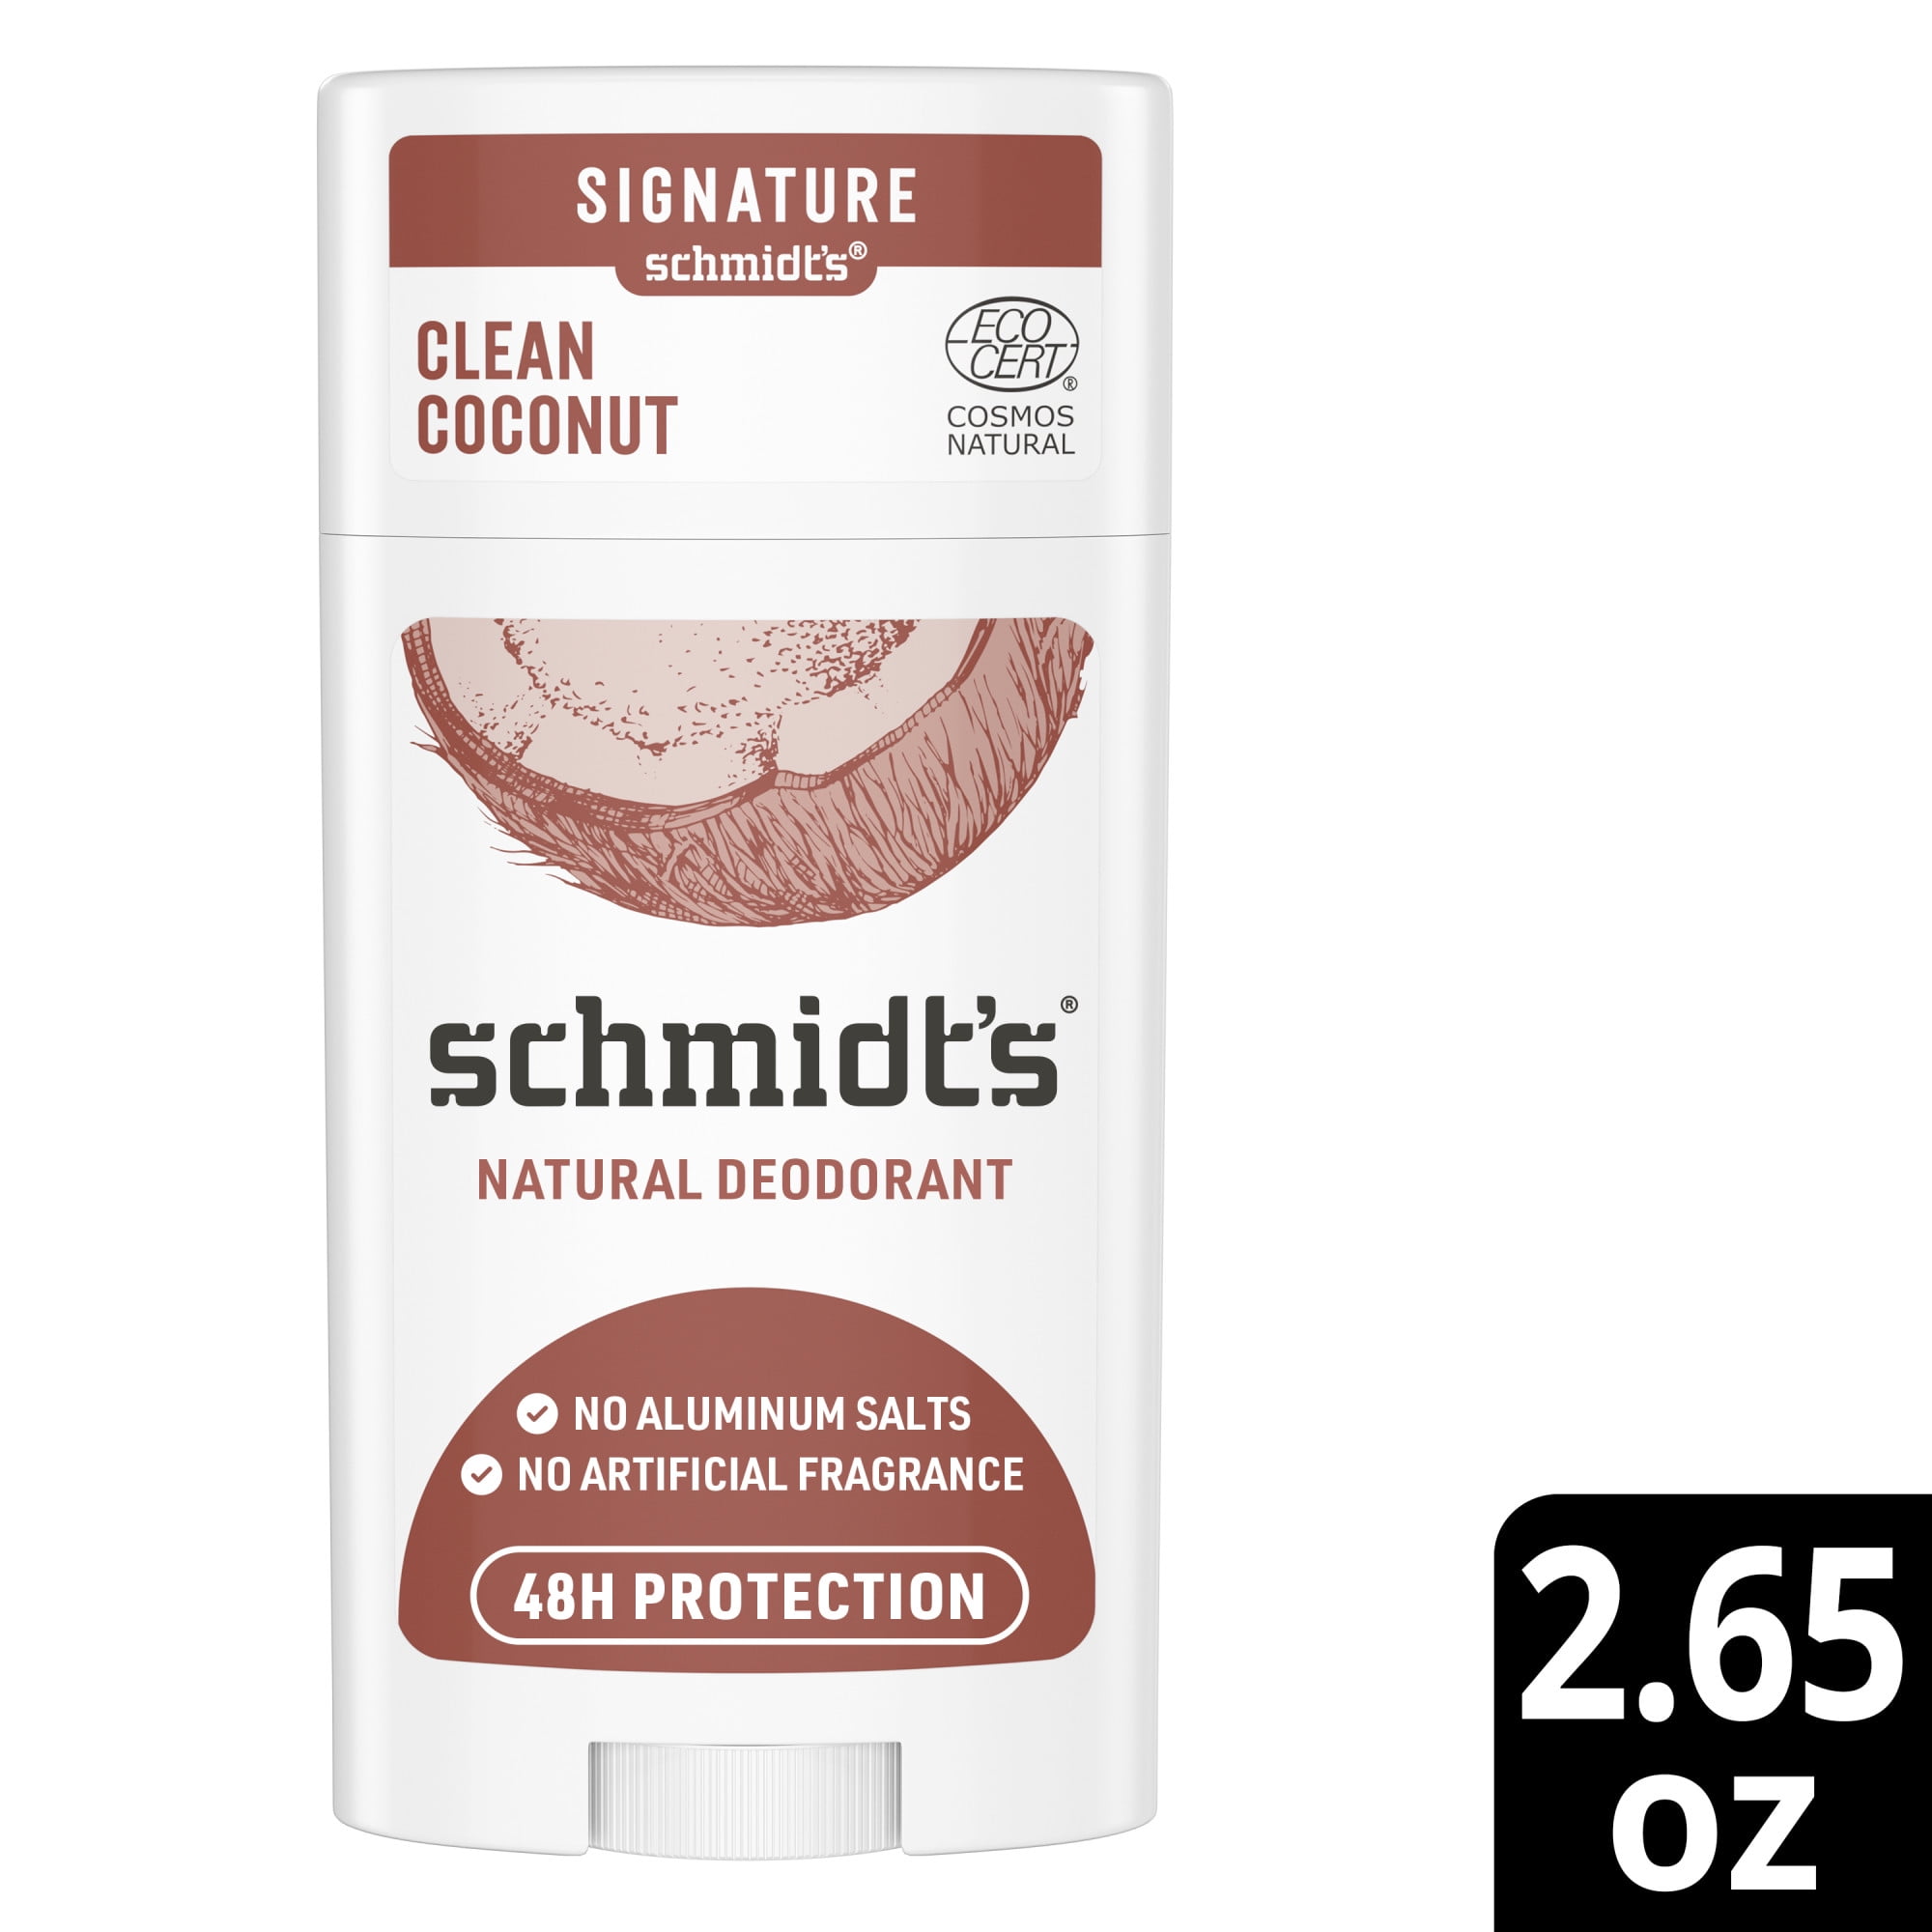 Schmidt's Aluminum Free Natural Deodorant Coconut, 2.65 - Walmart.com